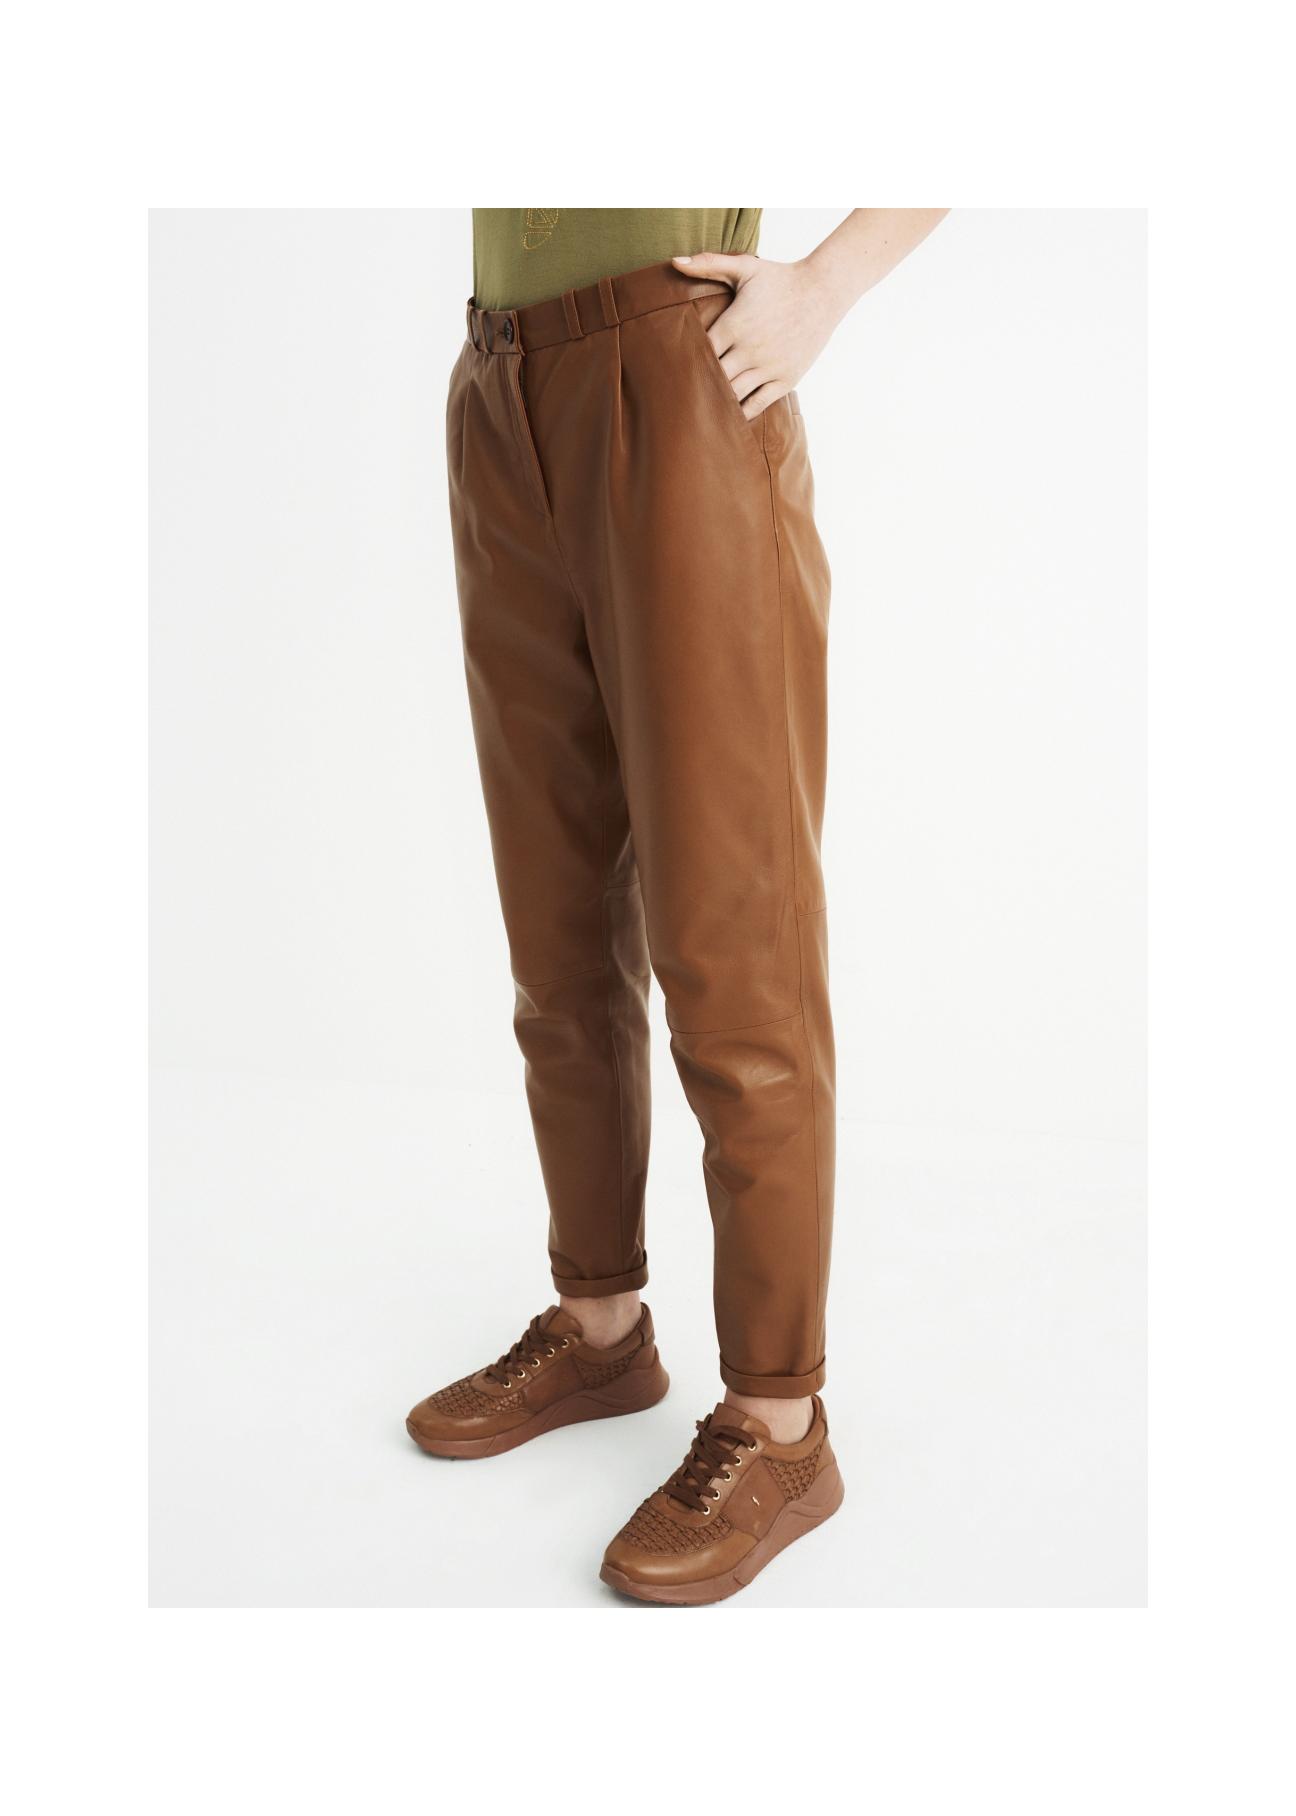 Spodnie skórzane karmelowe damskie SPODS-0022-1103(W22)-01